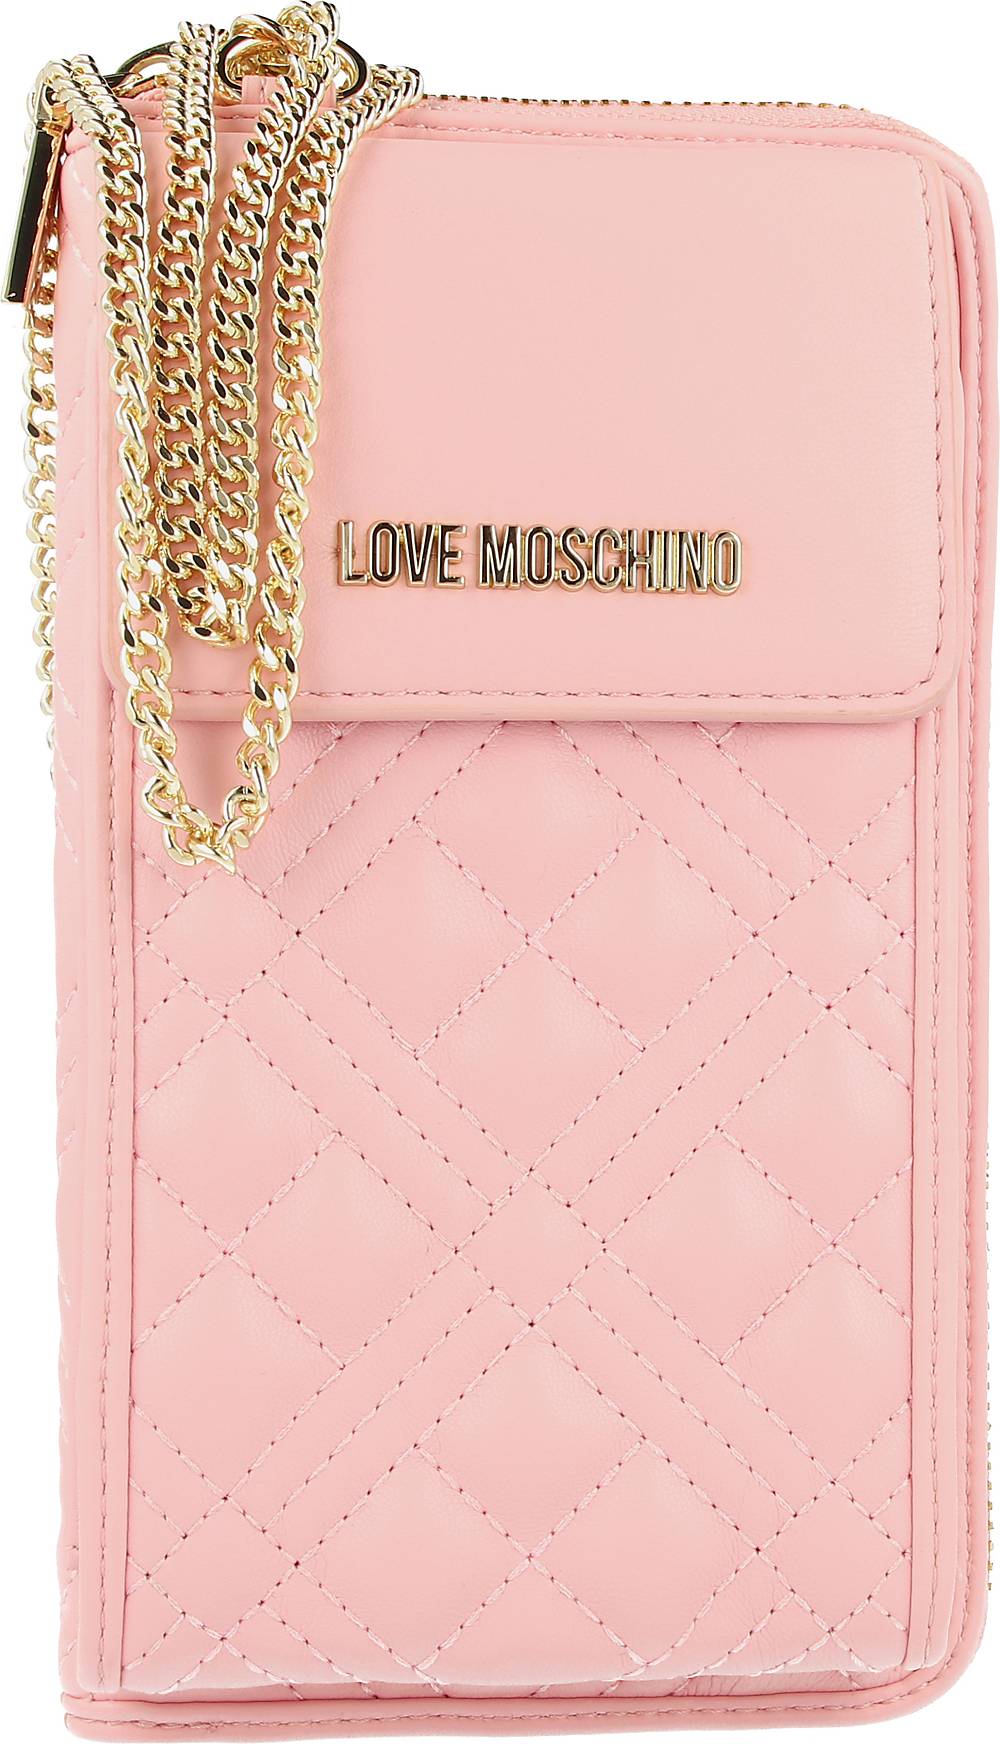 Love Moschino, Basic Quilted Handytasche Geldbörse 11 Cm in rosa, Handyhüllen & Zubehör für Damen